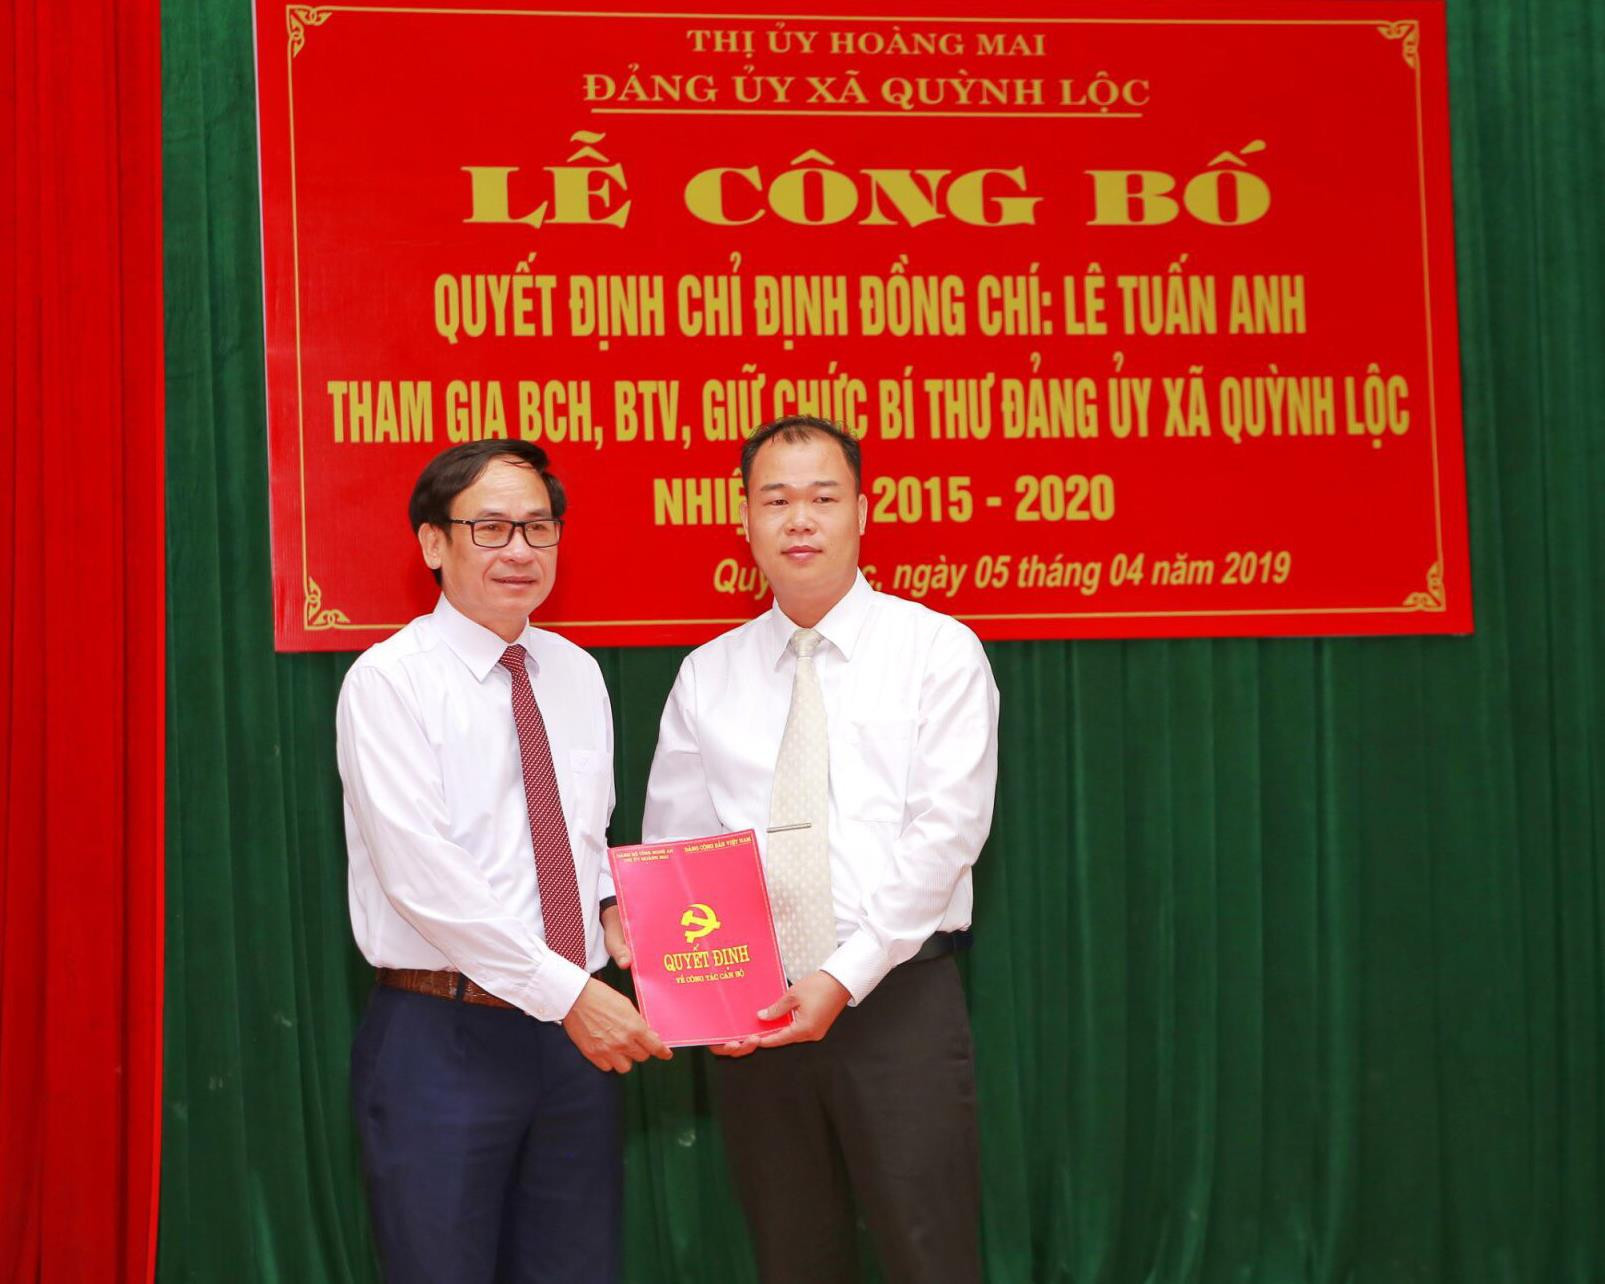  Bí thư Thị ủy Hoàng Mai trao quyết định cho đồng chí Lê Tuấn Anh nhận nhiệm vụ mới tại xã Quỳnh Lộc. Ảnh: Hồ Định